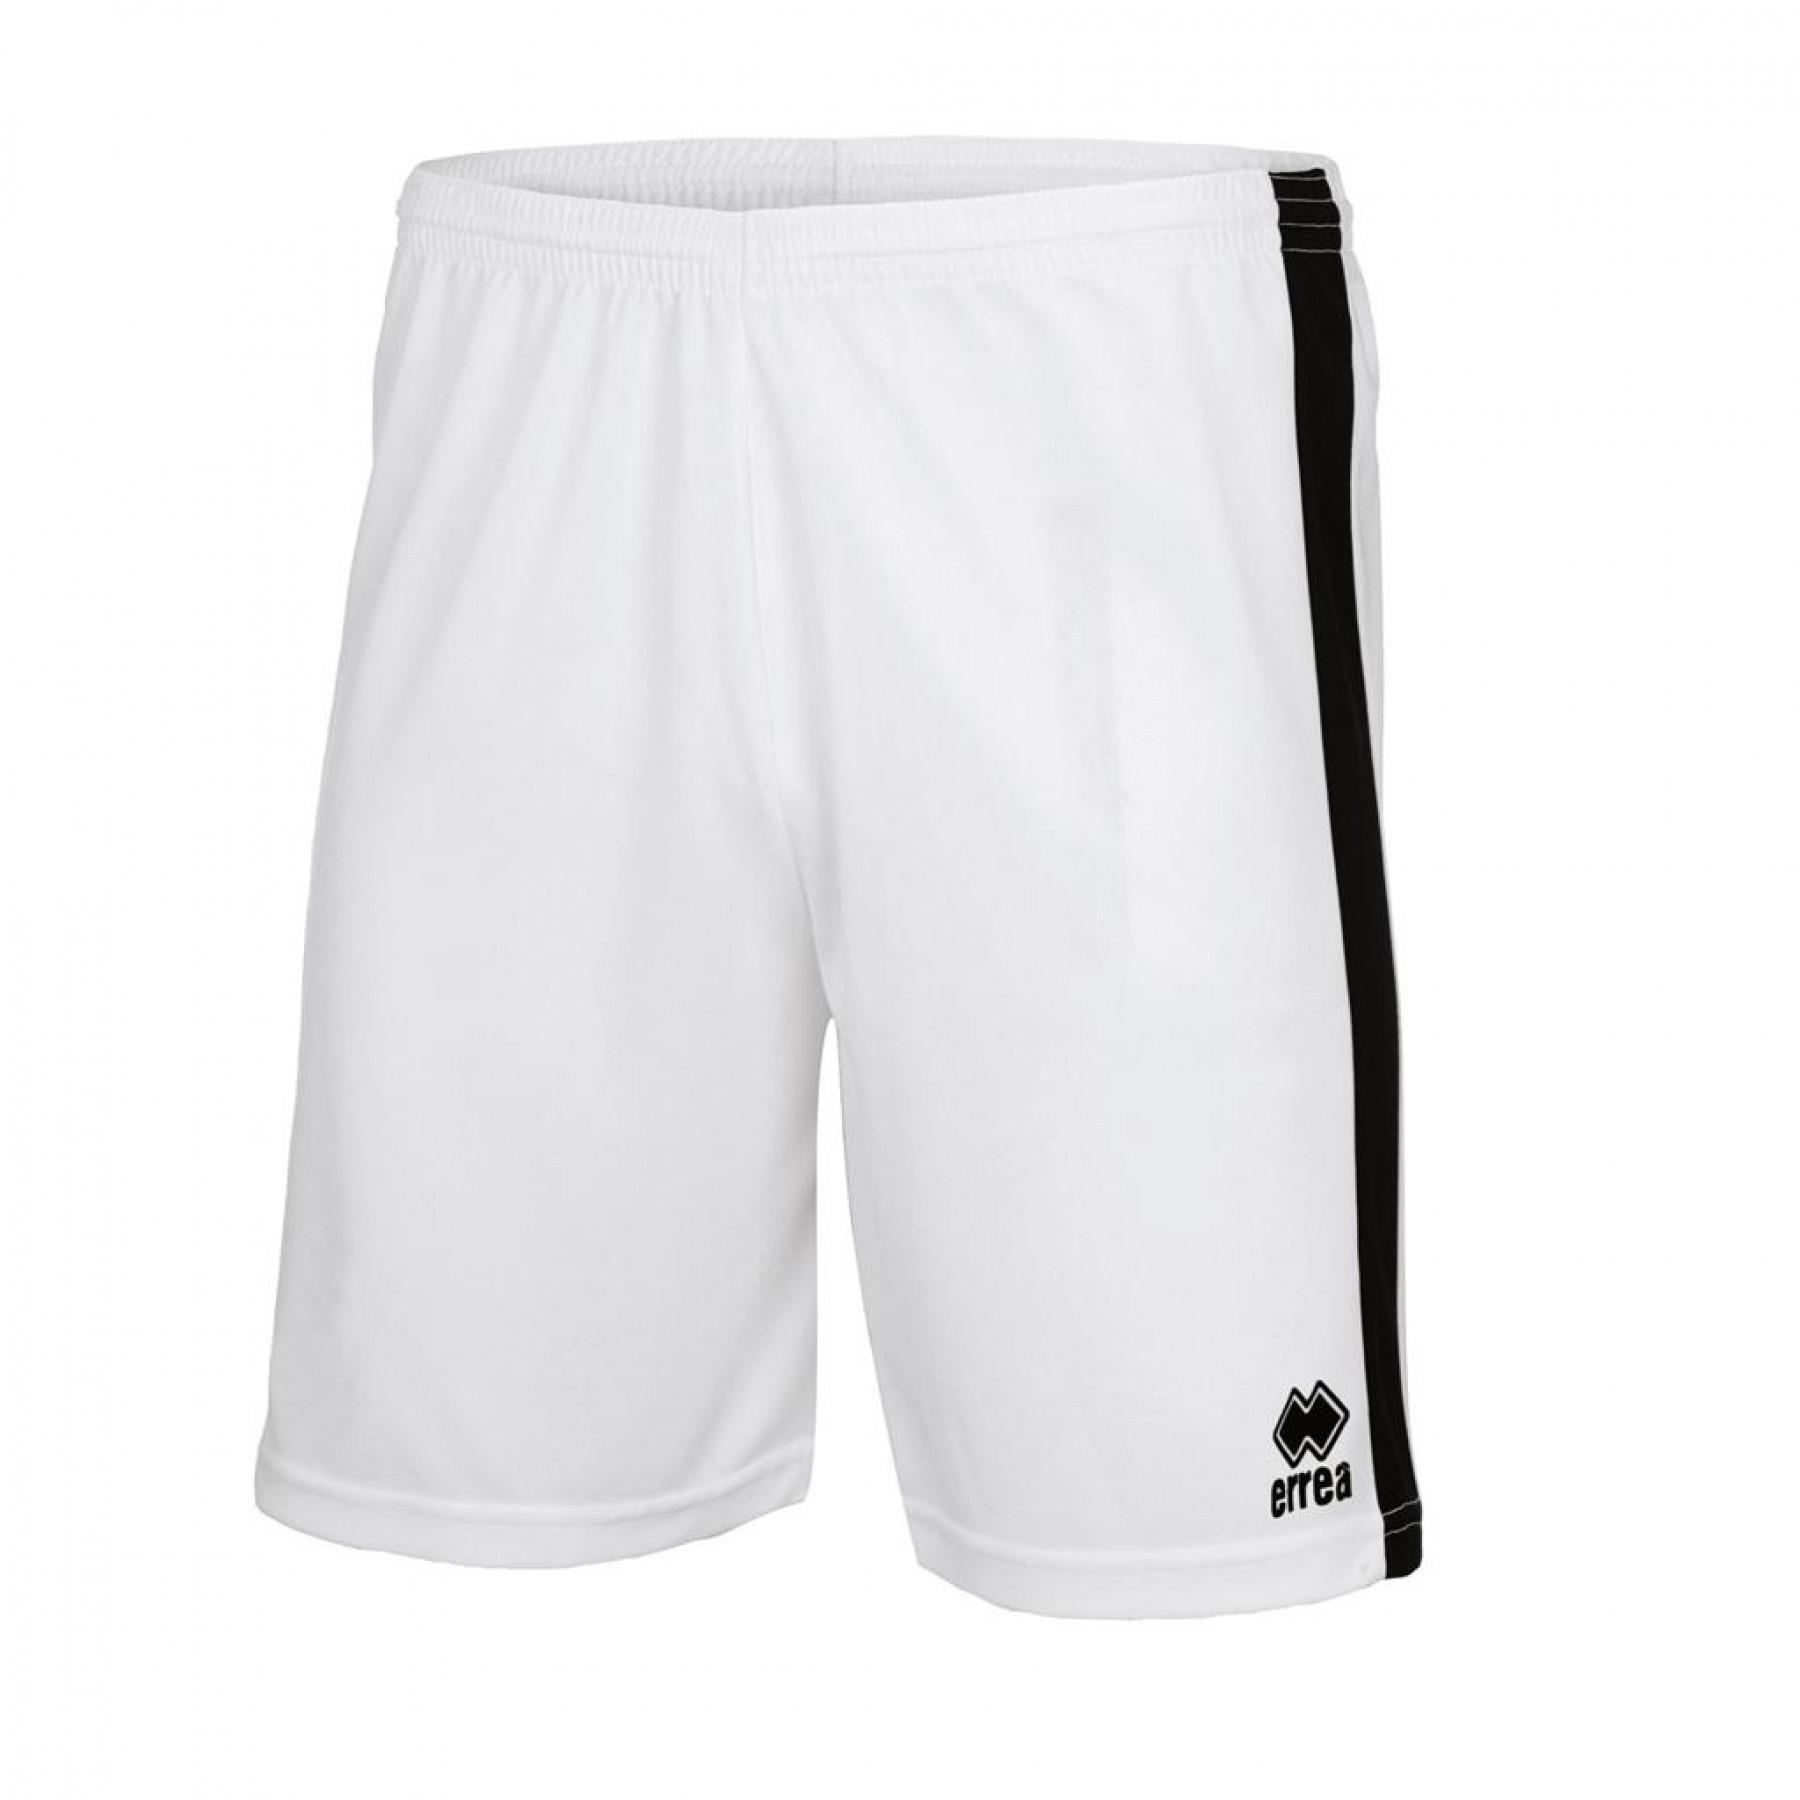 Children's shorts Errea Bolton - Shorts - Men's wear - Handball wear